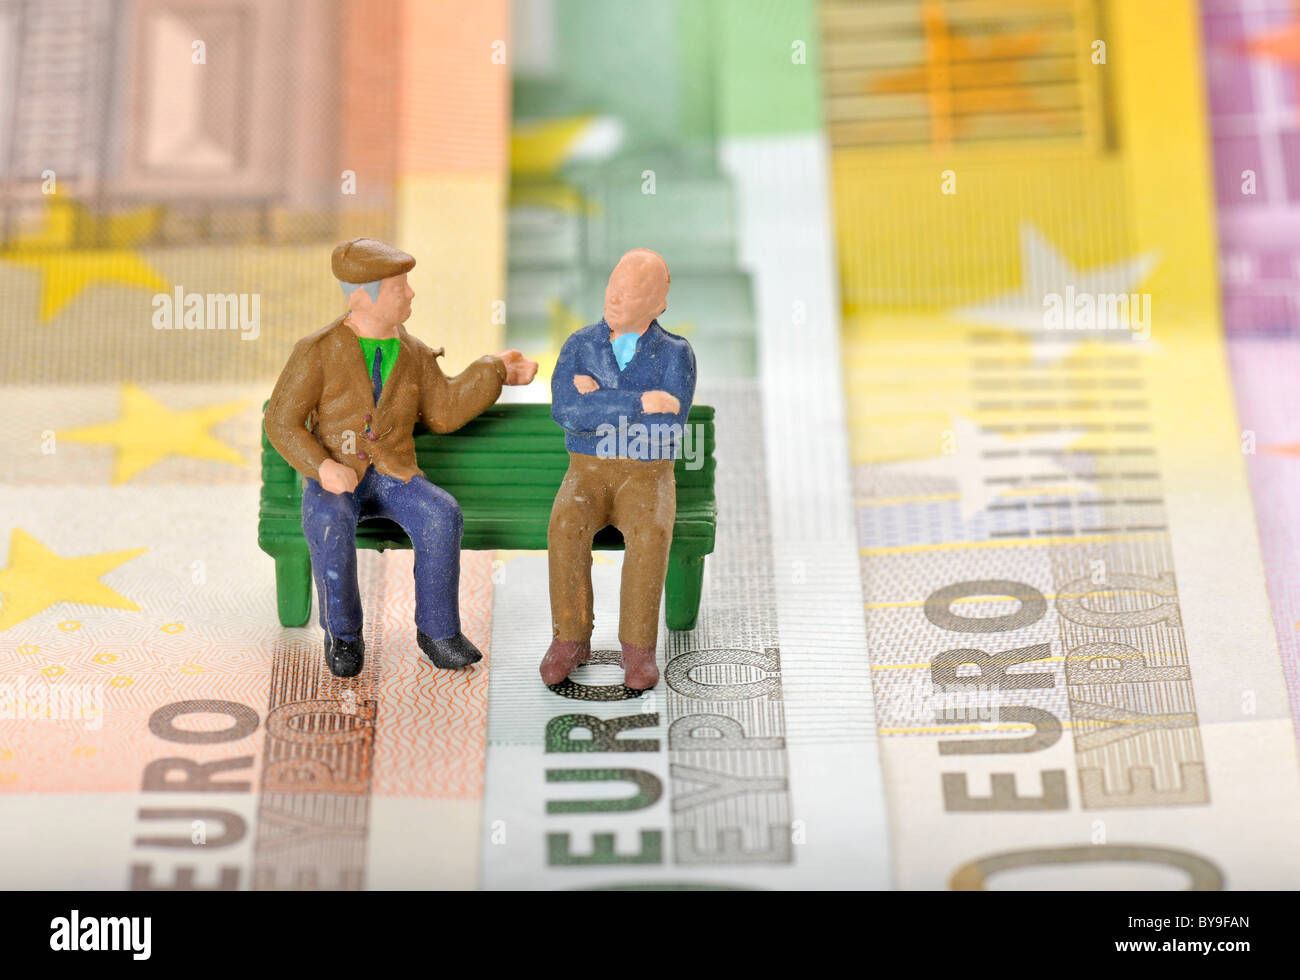 Varios billetes con figuras en miniatura de los ciudadanos de la tercera edad en una banca del parque, imagen simbólica para pensión o jubilación Foto de stock